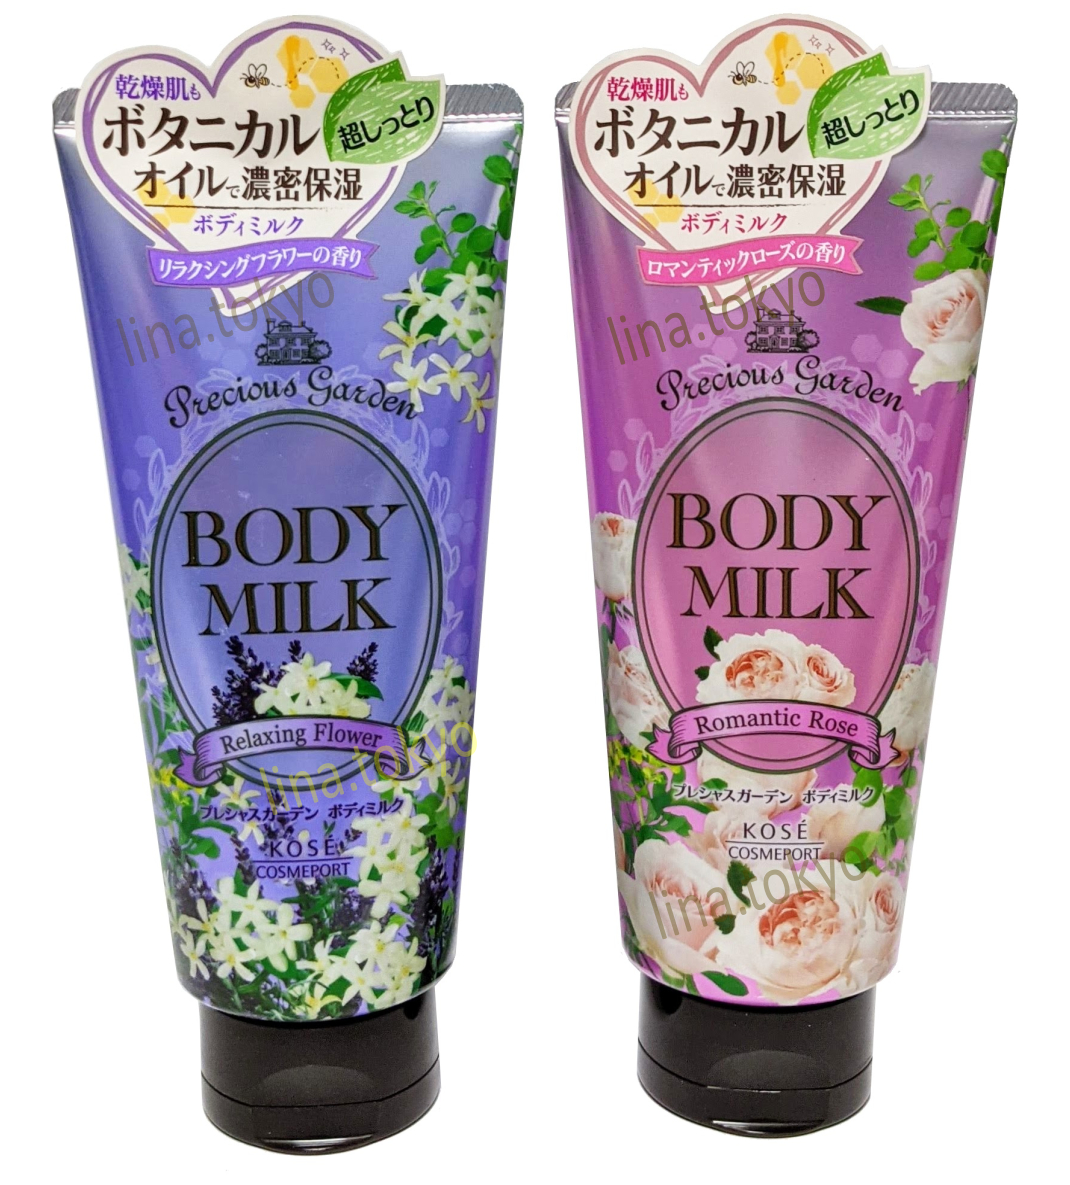 C1007- Kose relaxing flower body milk